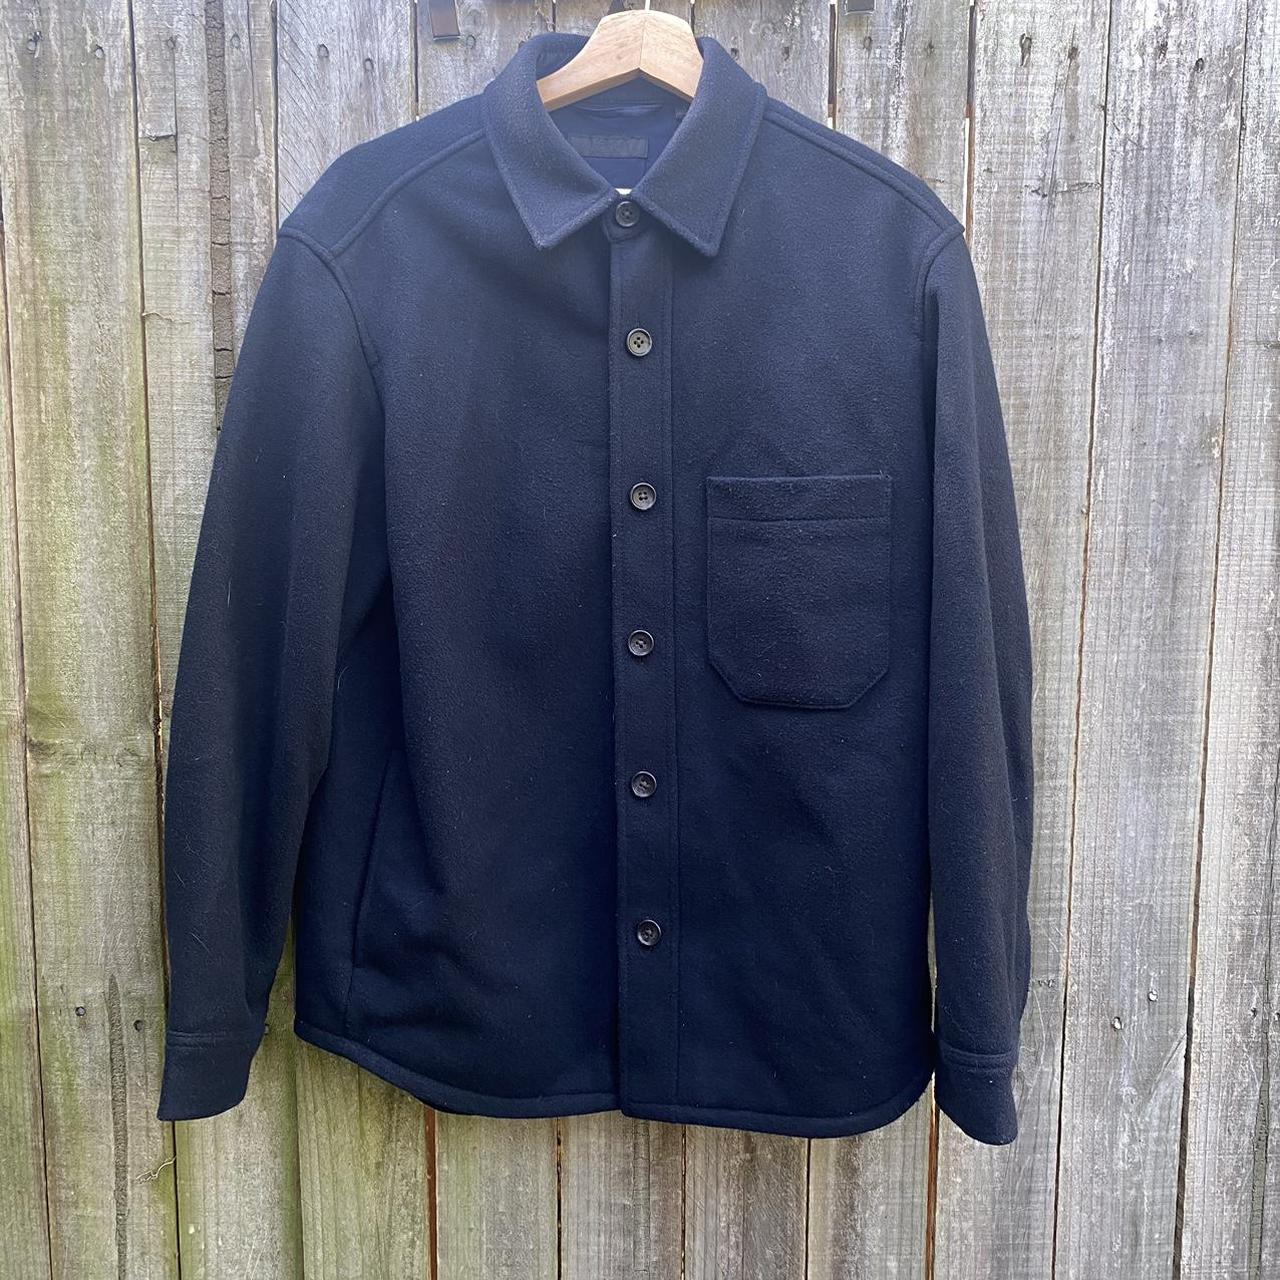 Uniqlo navy men’s shirt jacket or ‘shacket’ size... - Depop